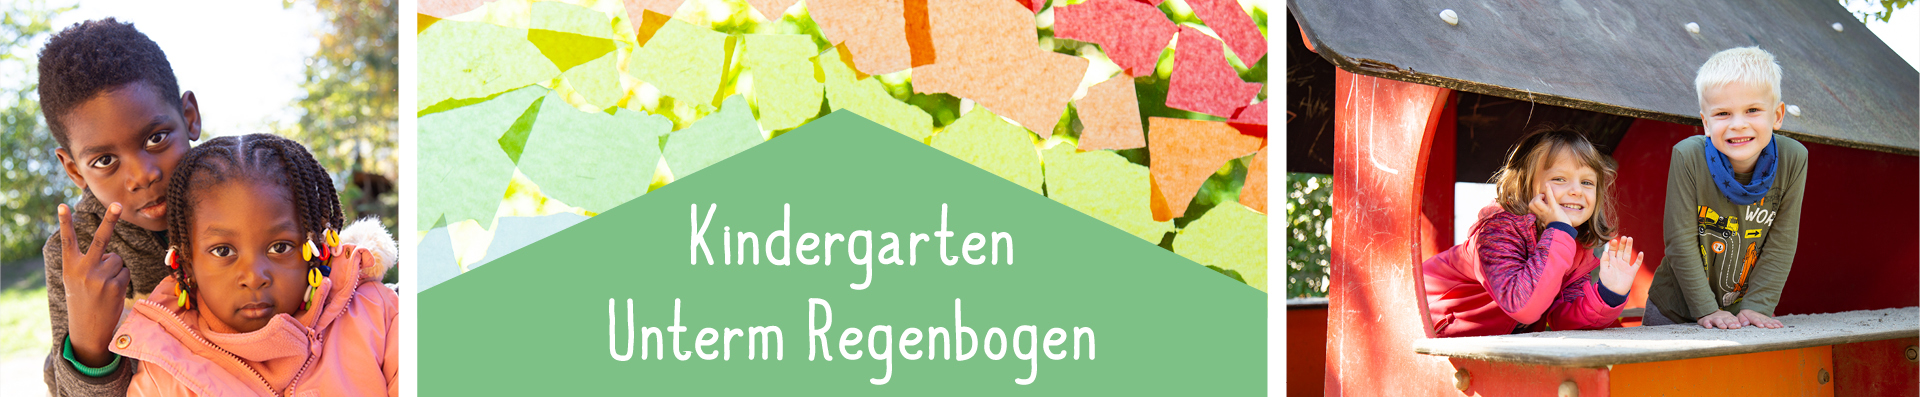 Kindergarten Unterm Regenbogen